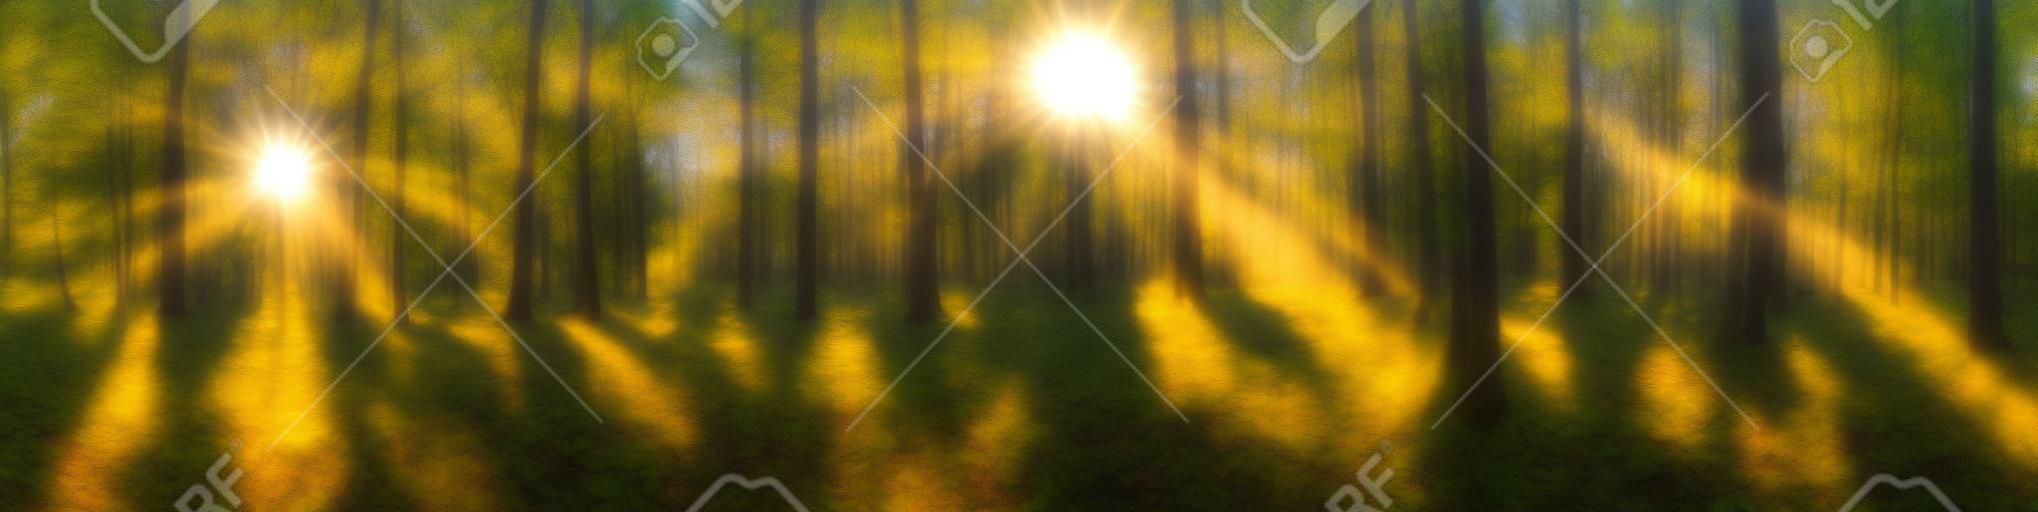 Belo panorama da floresta com sol brilhante brilhando através das árvores